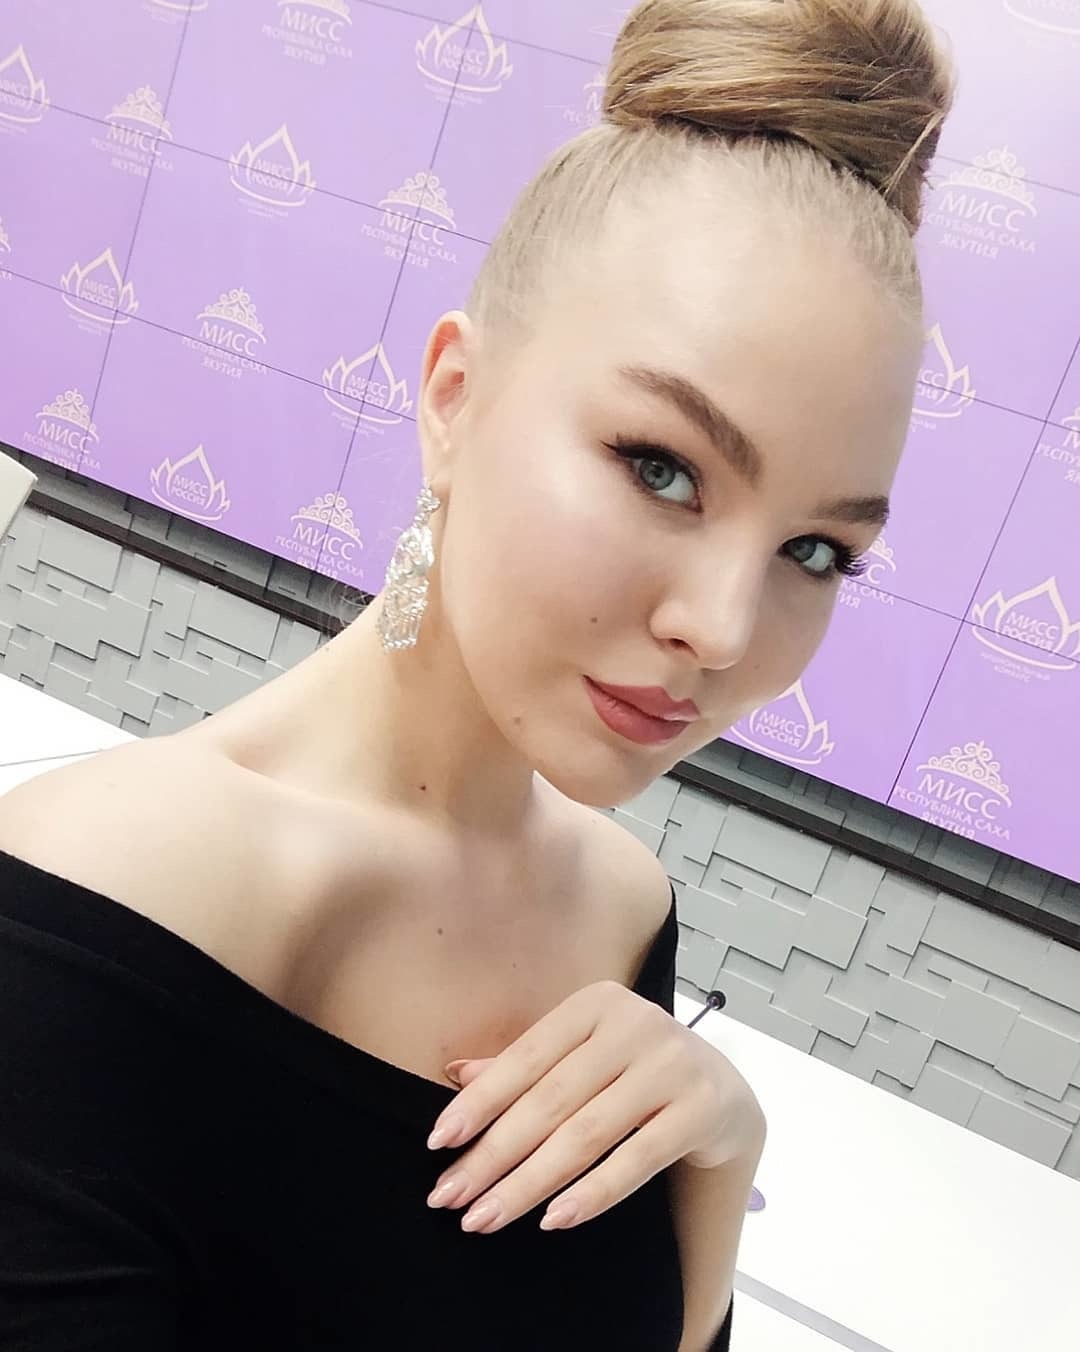 Корона конкурса "Мисс Республика Саха (Якутия)" впервые досталась блондинке